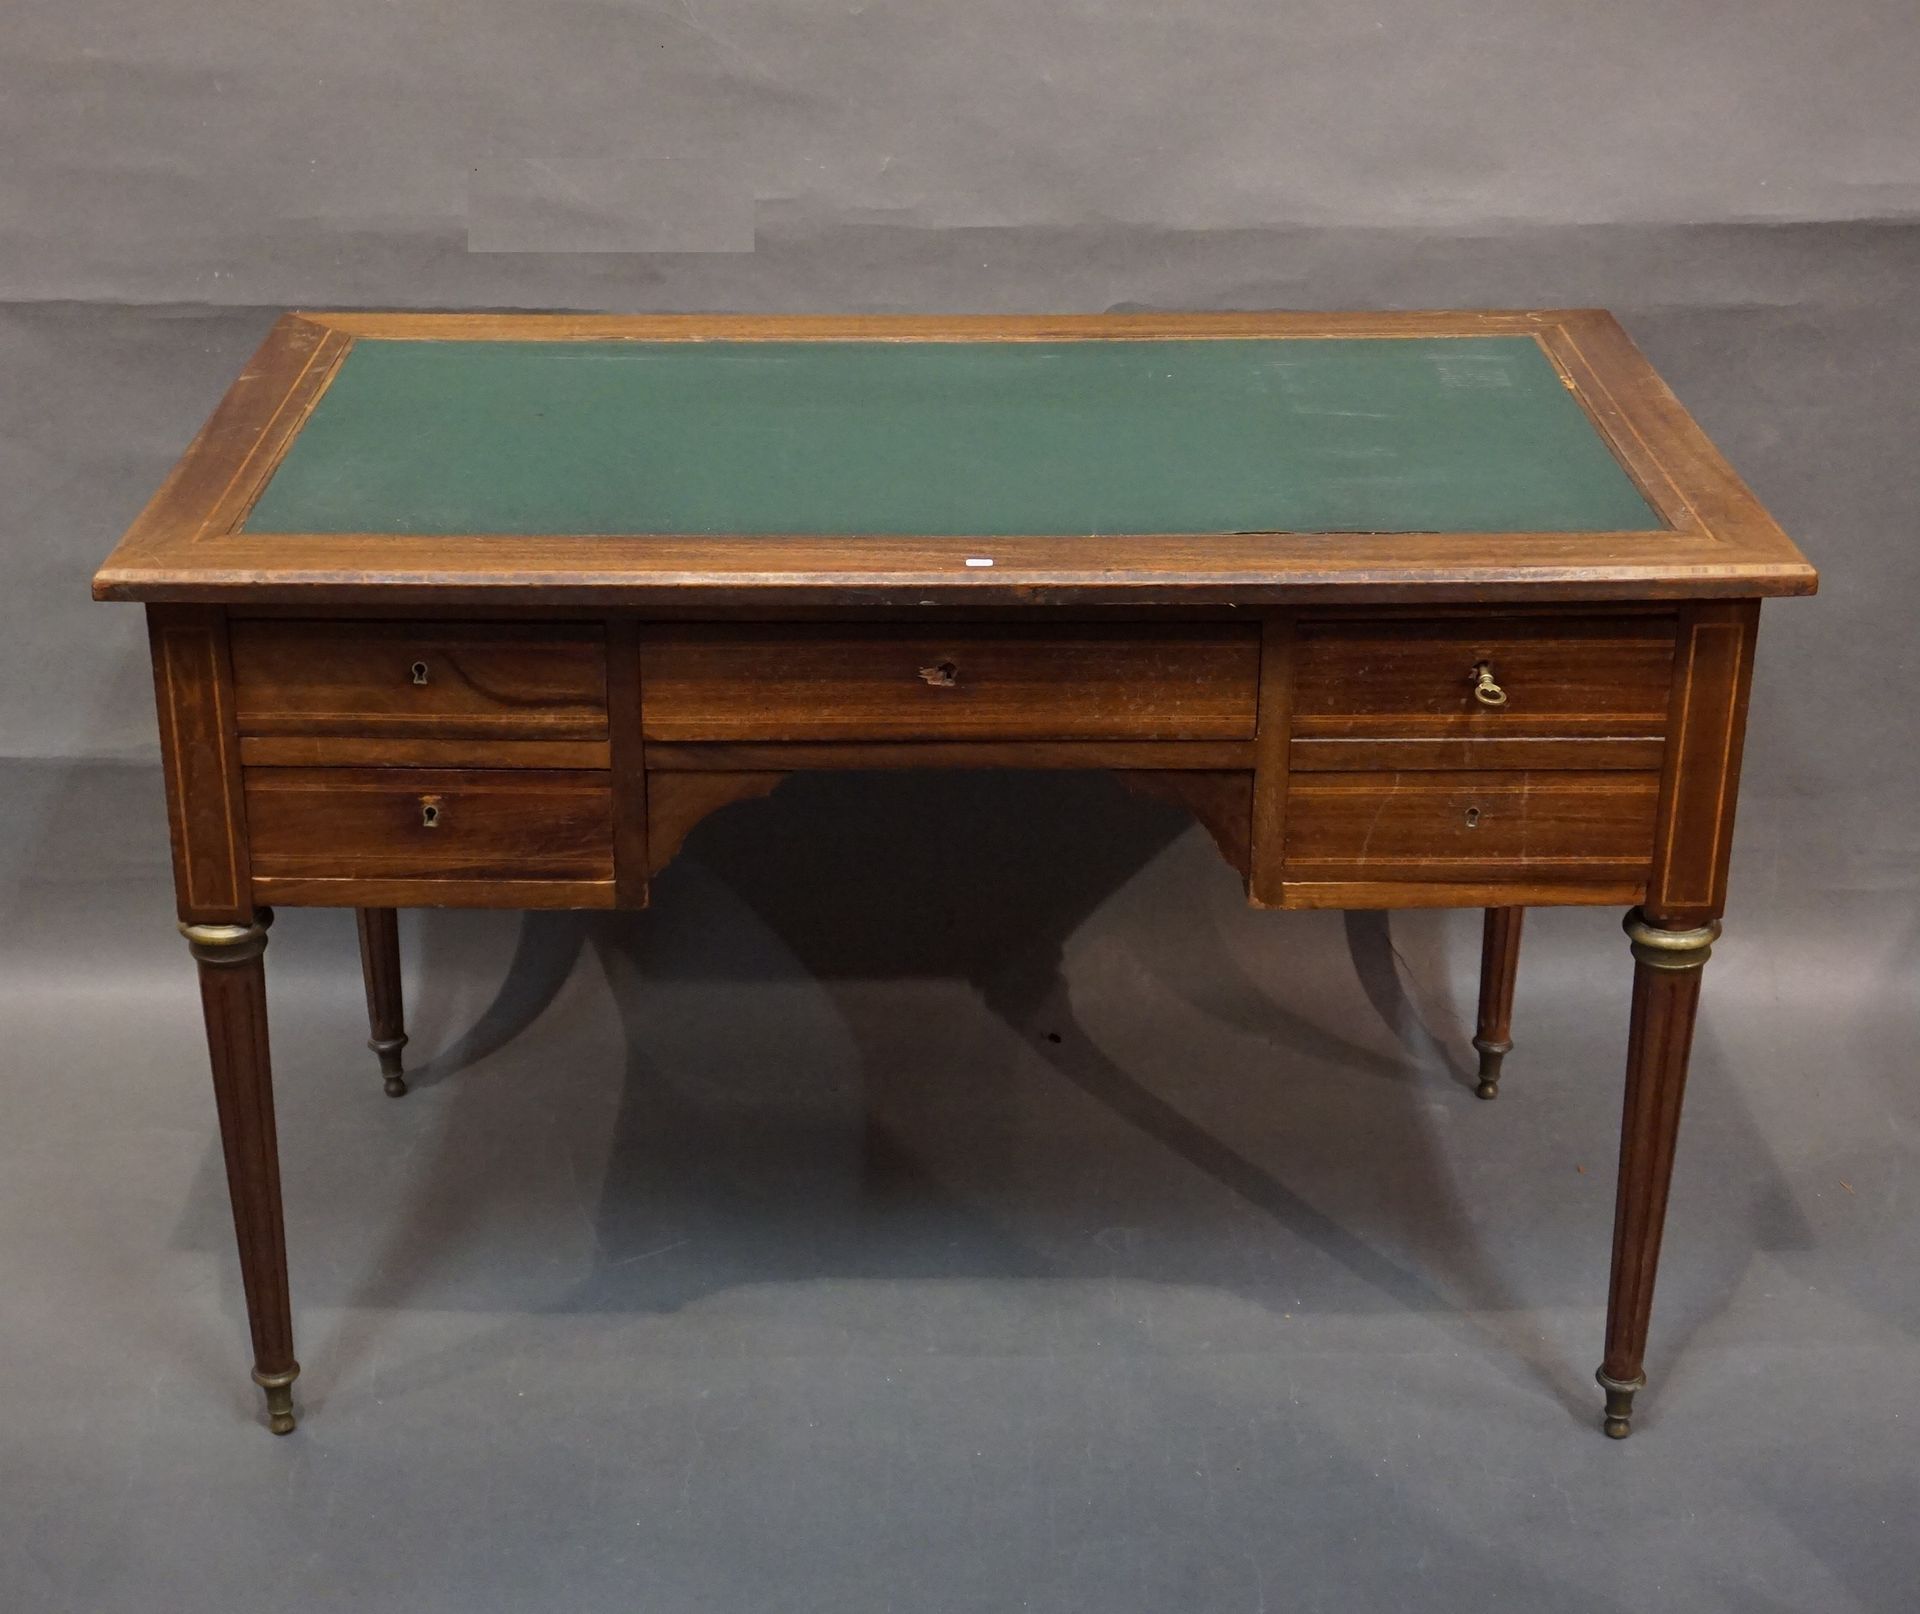 Bureau Plat 饰面的平面书桌，有四个抽屉，两个拉手，绿色皮革桌面。路易十六风格（磨损）。77x119x69厘米